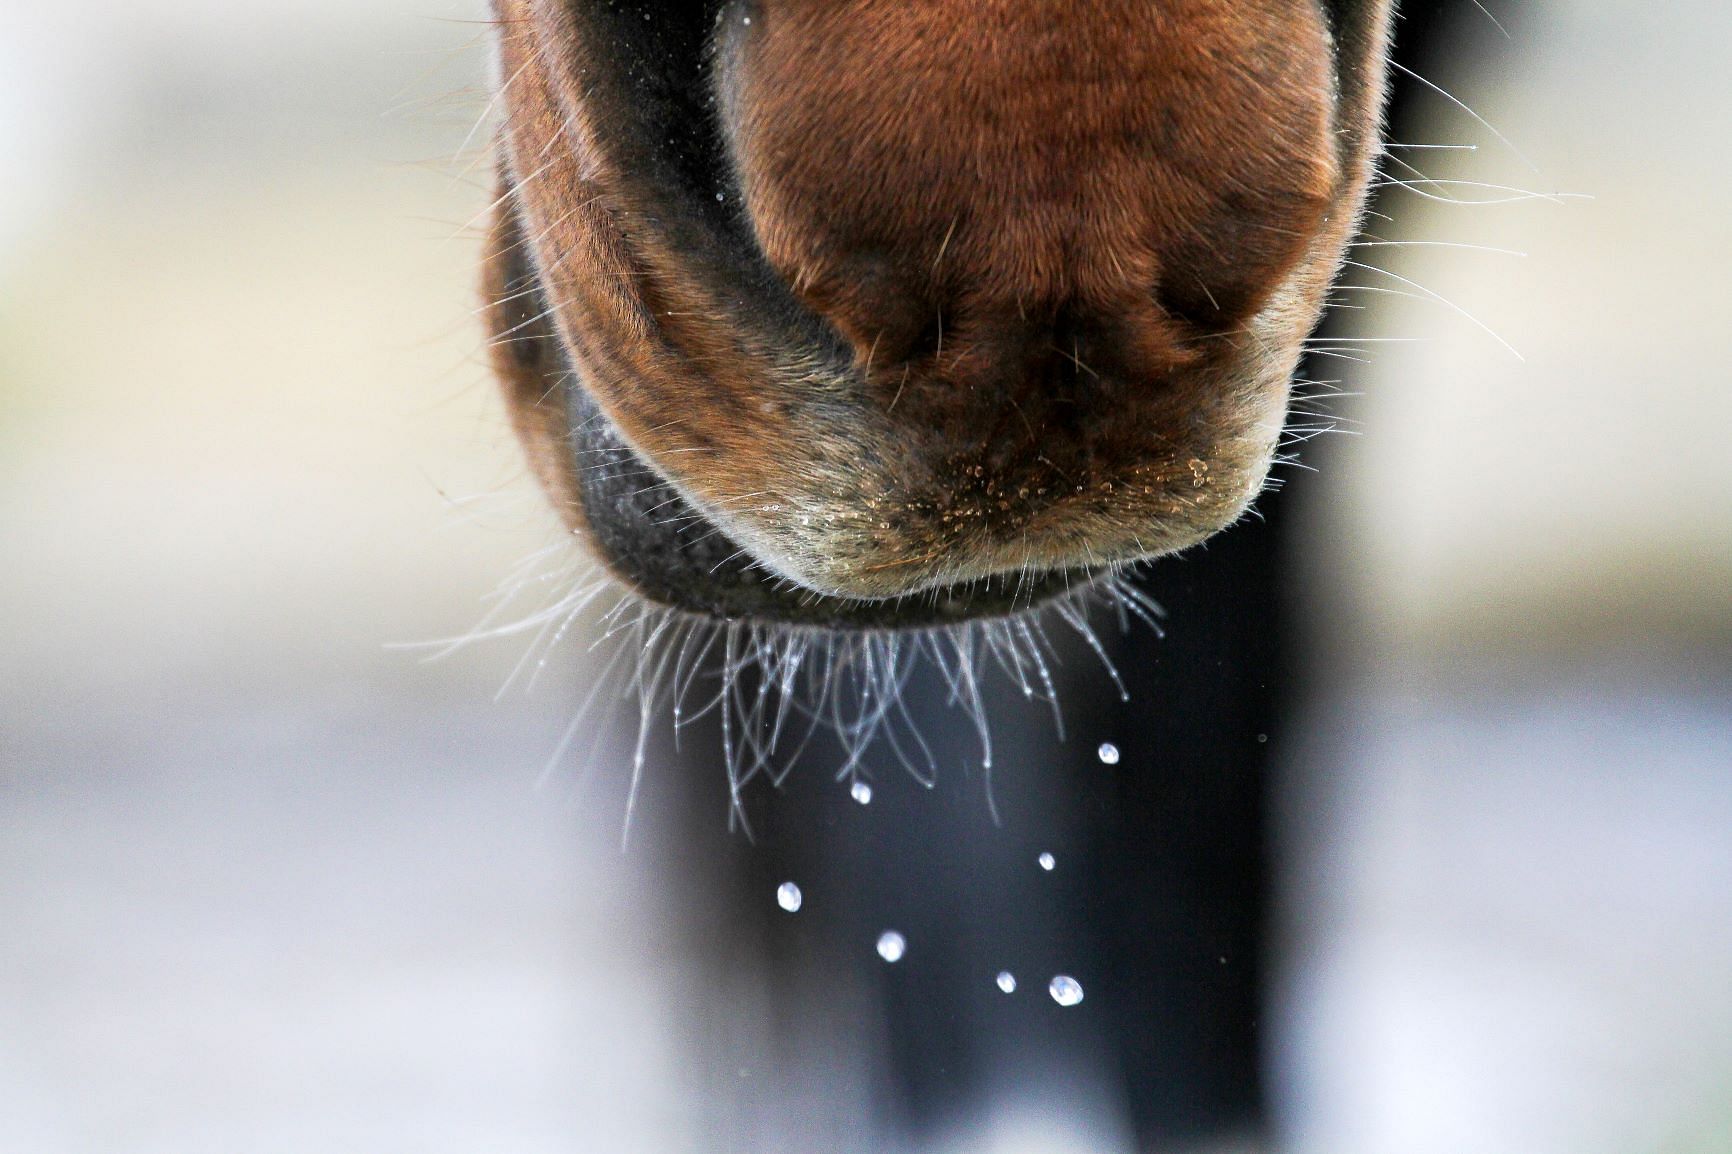 Vesi on hevosen tärkein ravintoaine. Joutilaan aikuisen hevosen minimitarve päivässä on 5 litraa vettä per 100 kiloa elopainoa. Kuva: Anu Leppänen